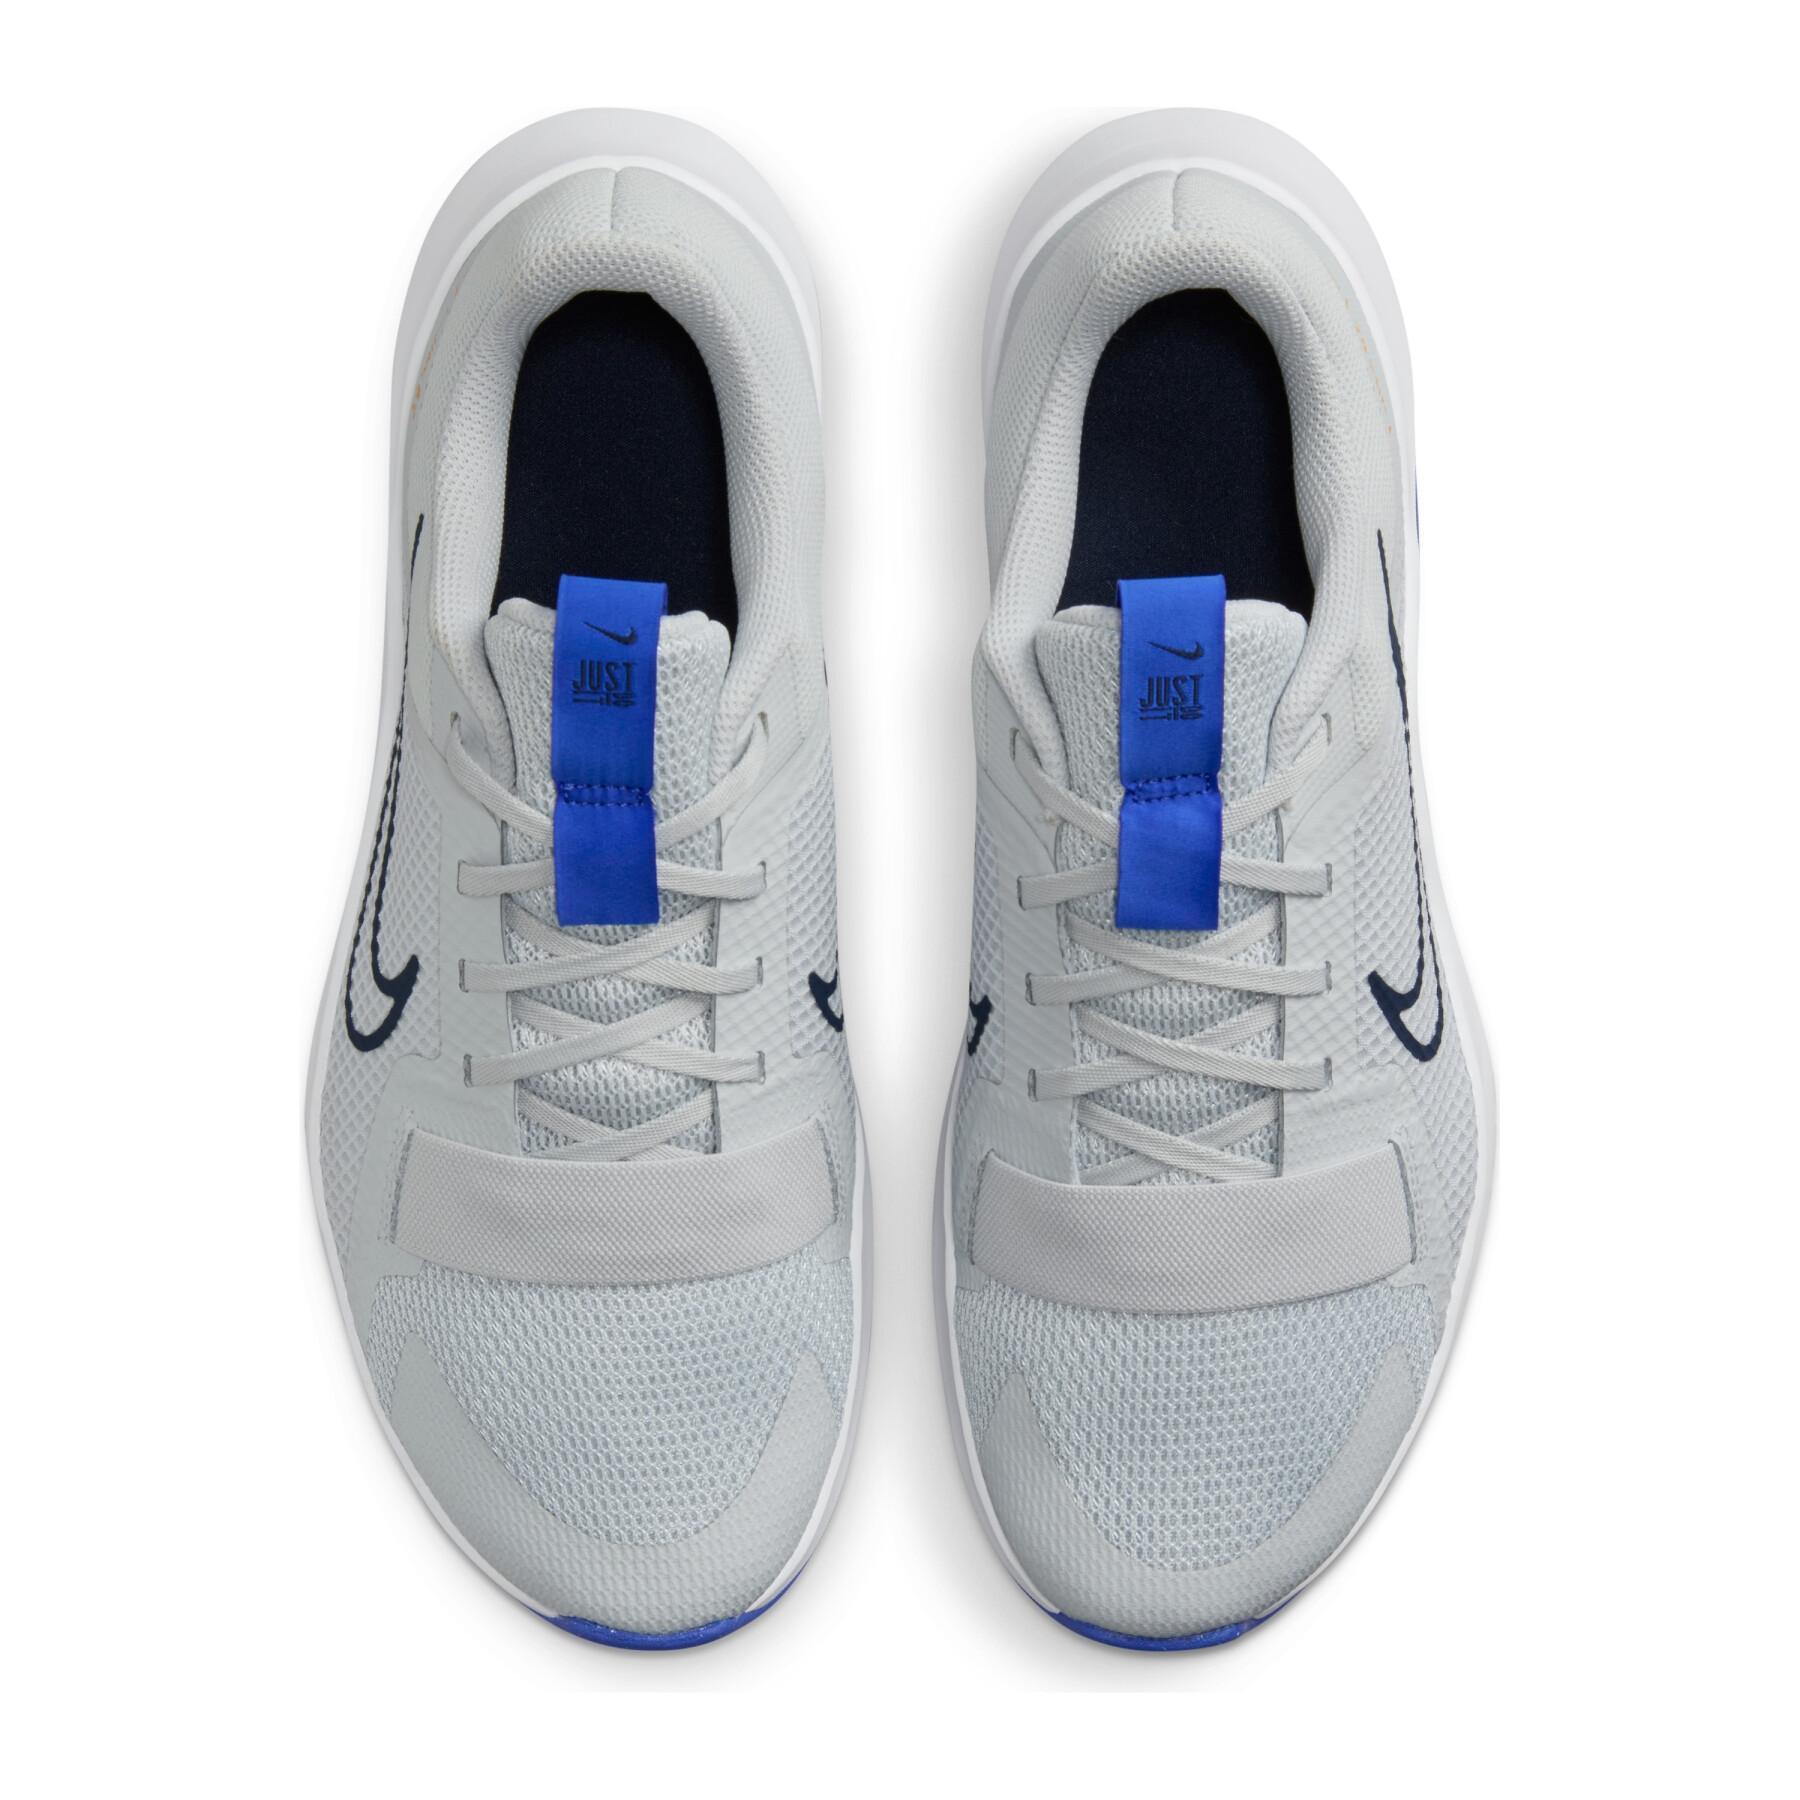 Sapatos de treino cruzado Nike MC Trainer 2